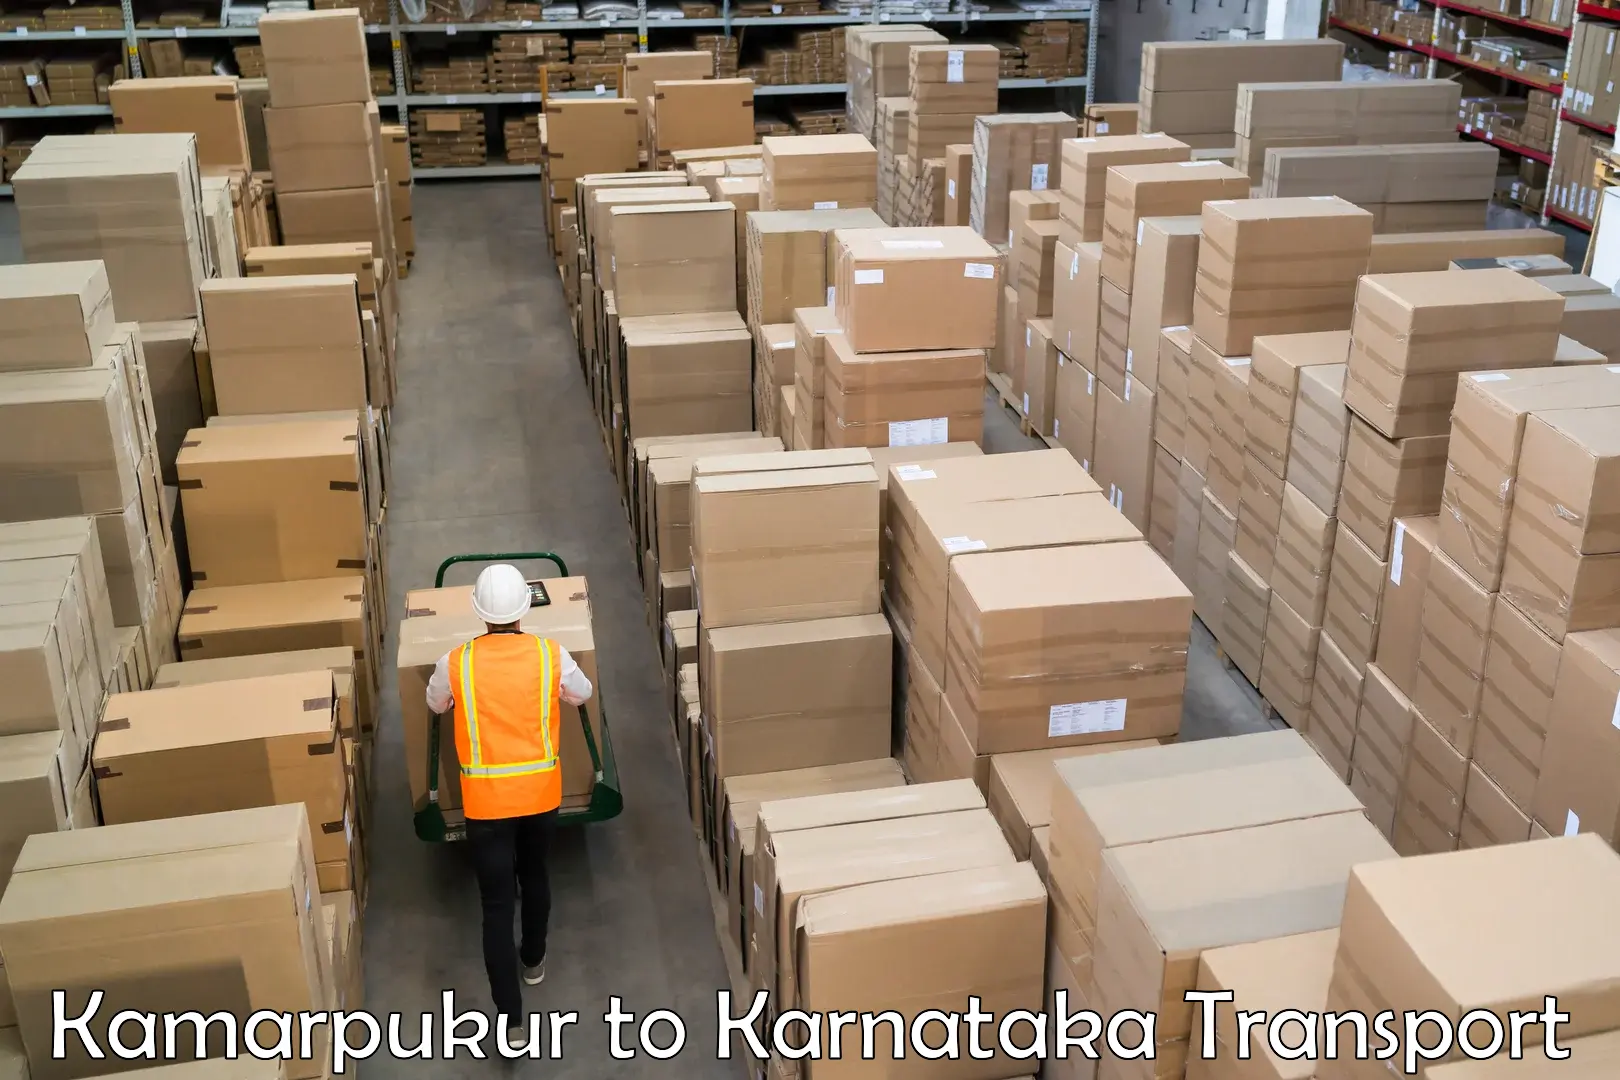 Bike transport service Kamarpukur to Karnataka